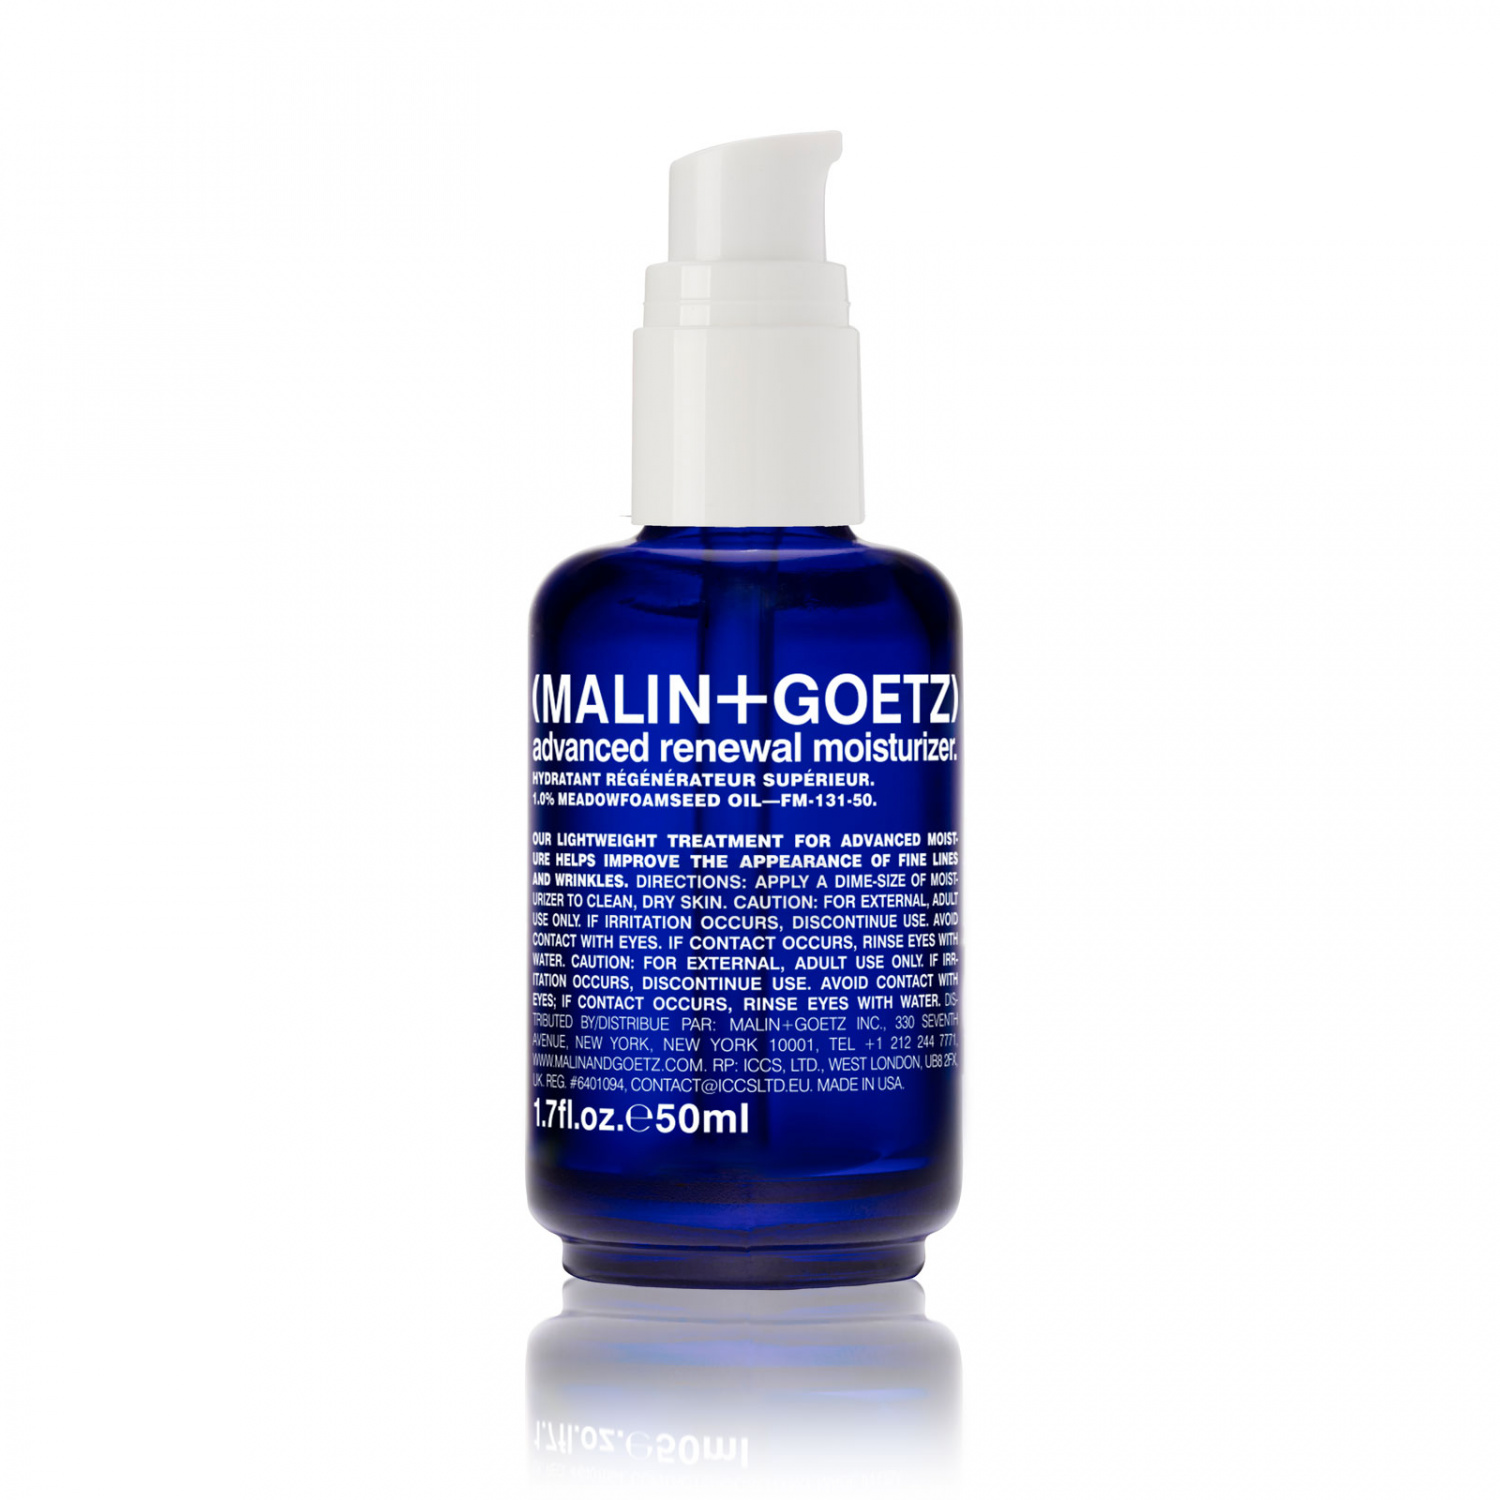 MALIN+GOETZ advanced renewal moisturizer 50ml - интернет-магазин профессиональной косметики Spadream, изображение 32427